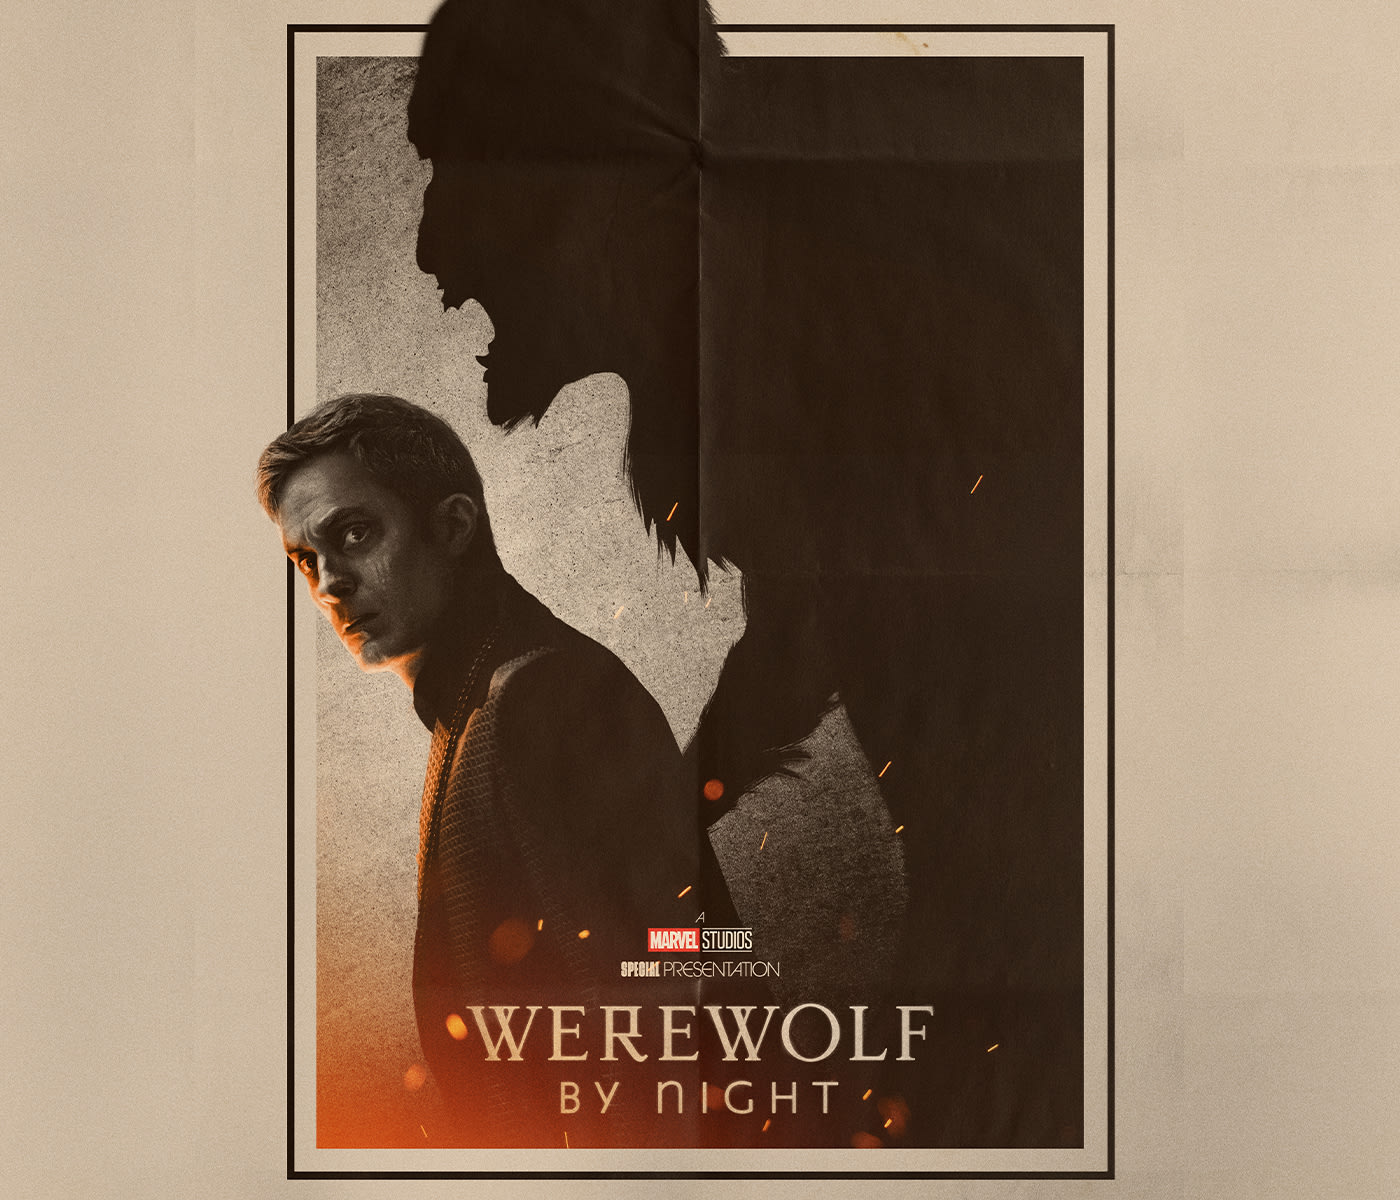 Weirdhouse Cinema: Night of the Werewolf